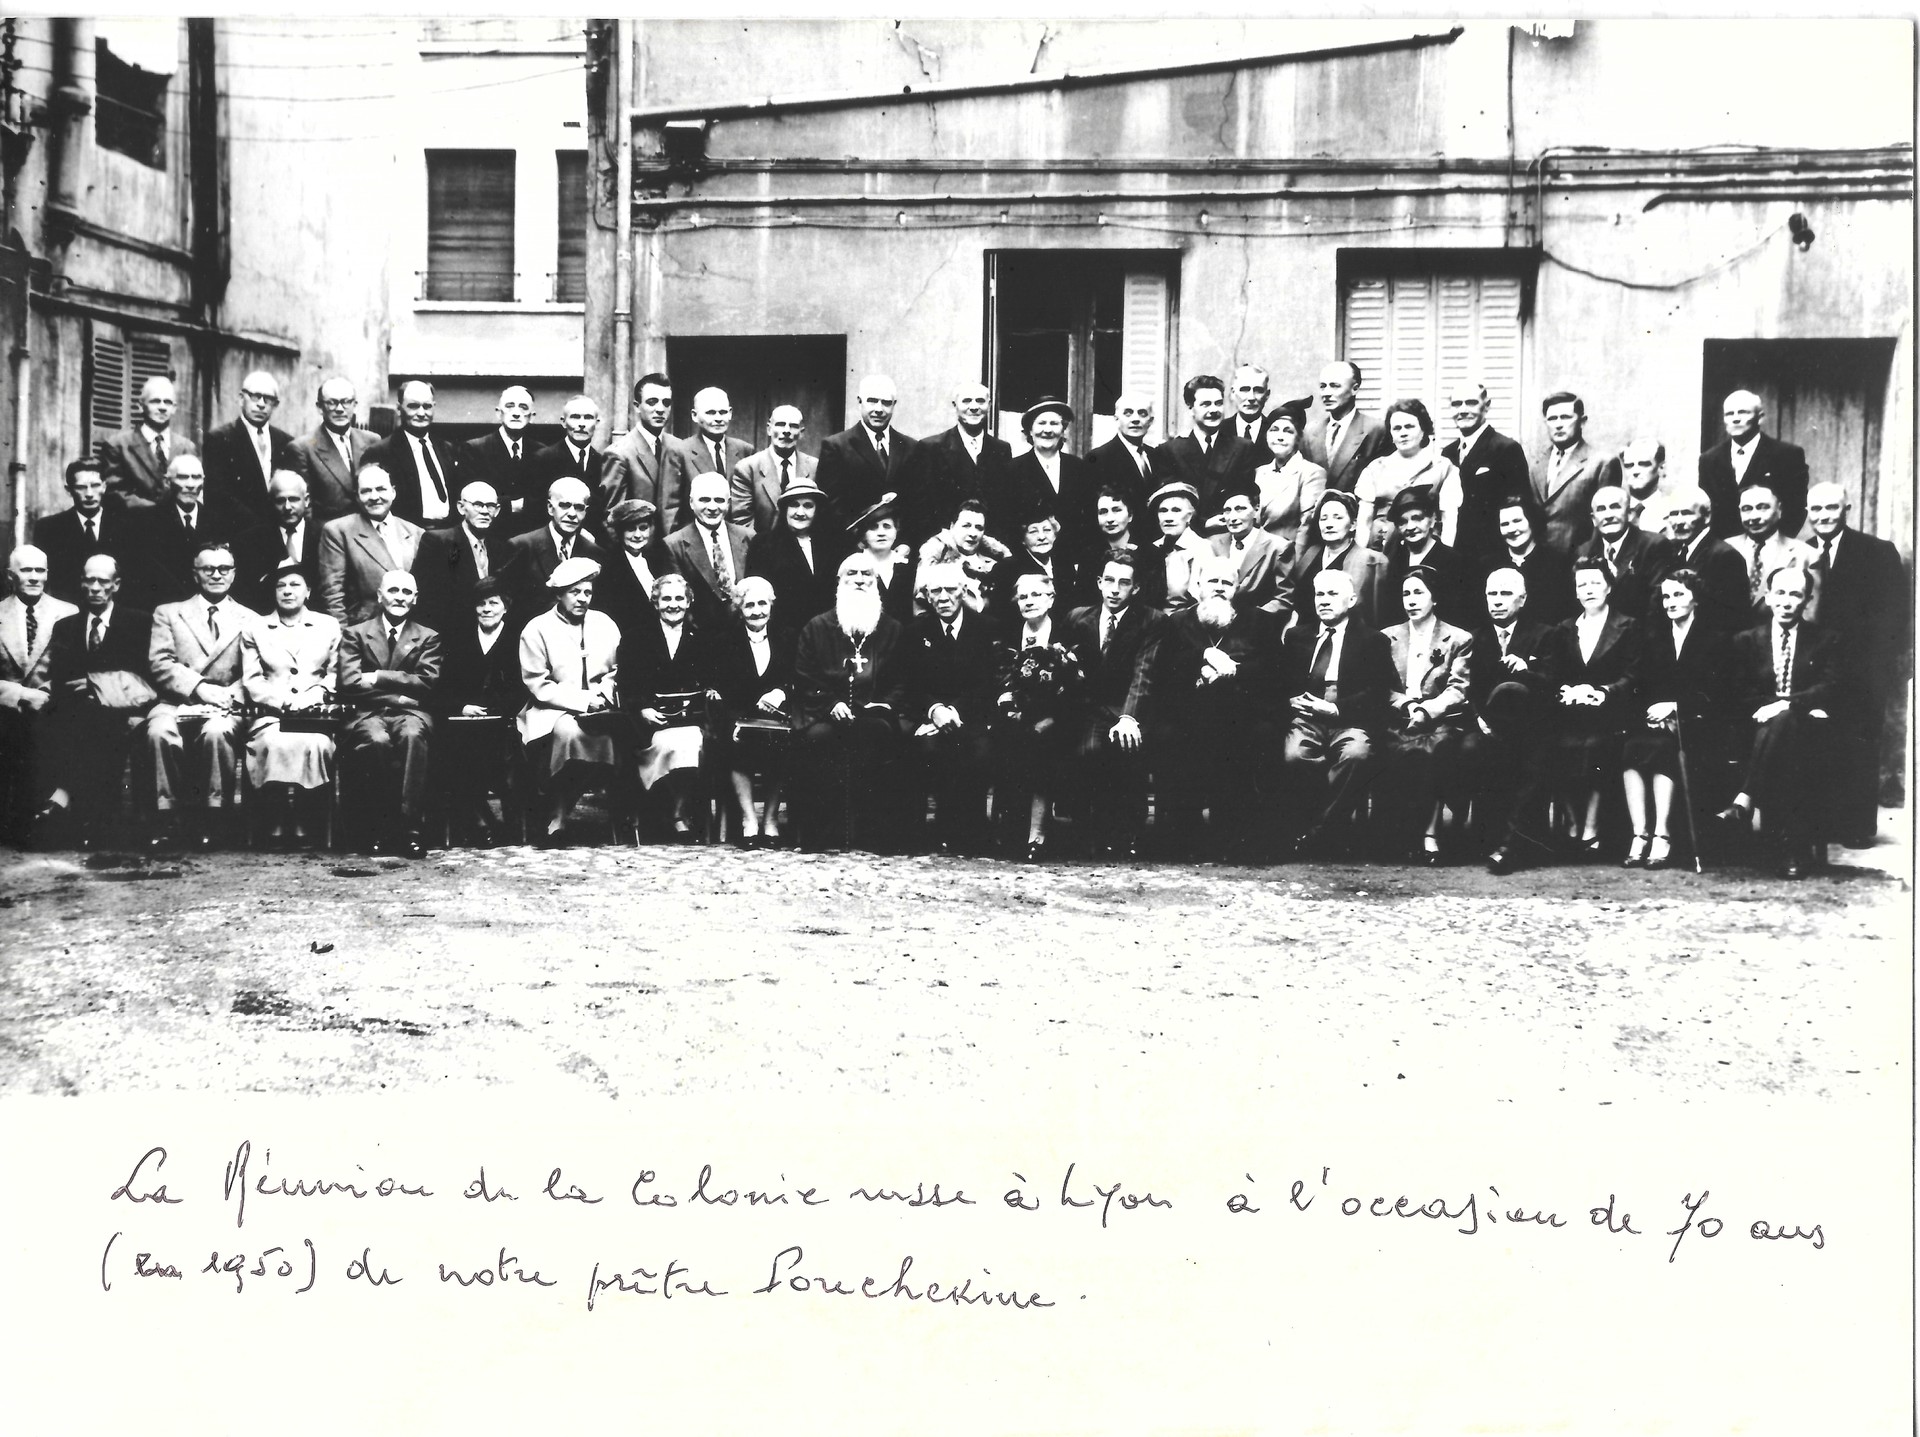 Une réunion des deux églises russes de Lyon en 1950 à l'occasion des 85 ans du Père Pouchkine